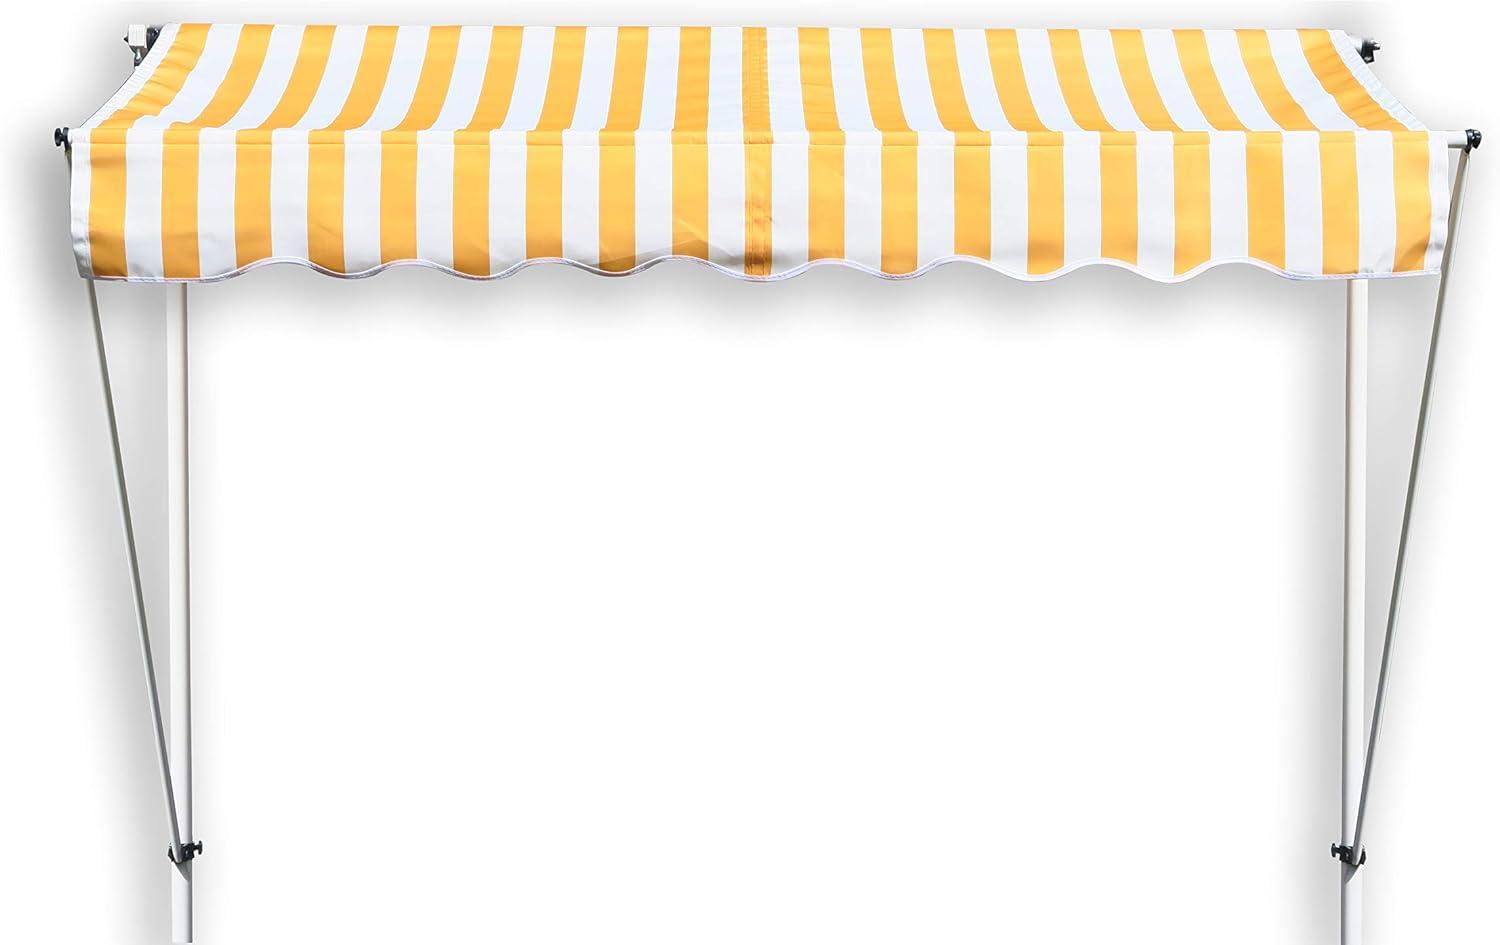 Grasekamp Klemmmarkise Ontario 200x130cm Gelb-Weiß Balkonmarkise höhenverstellbar von 200 cm – 320 cm Bild 1